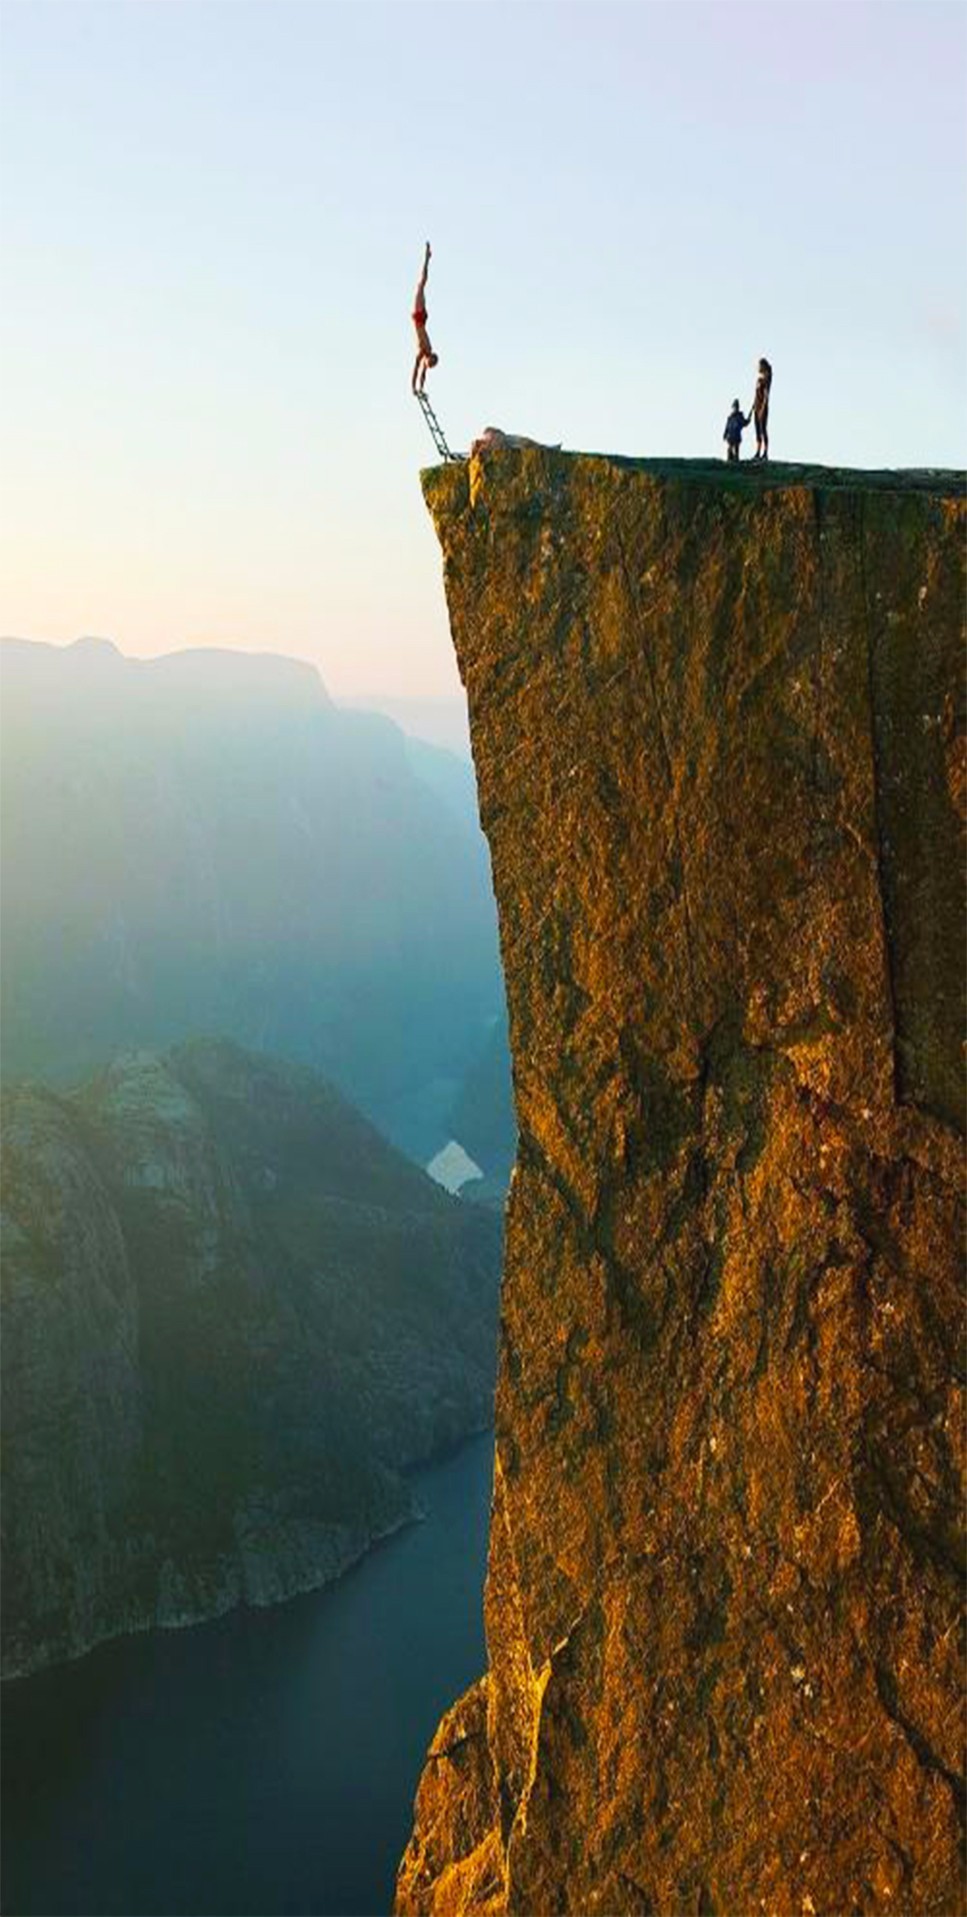 世界上最高的悬崖图片